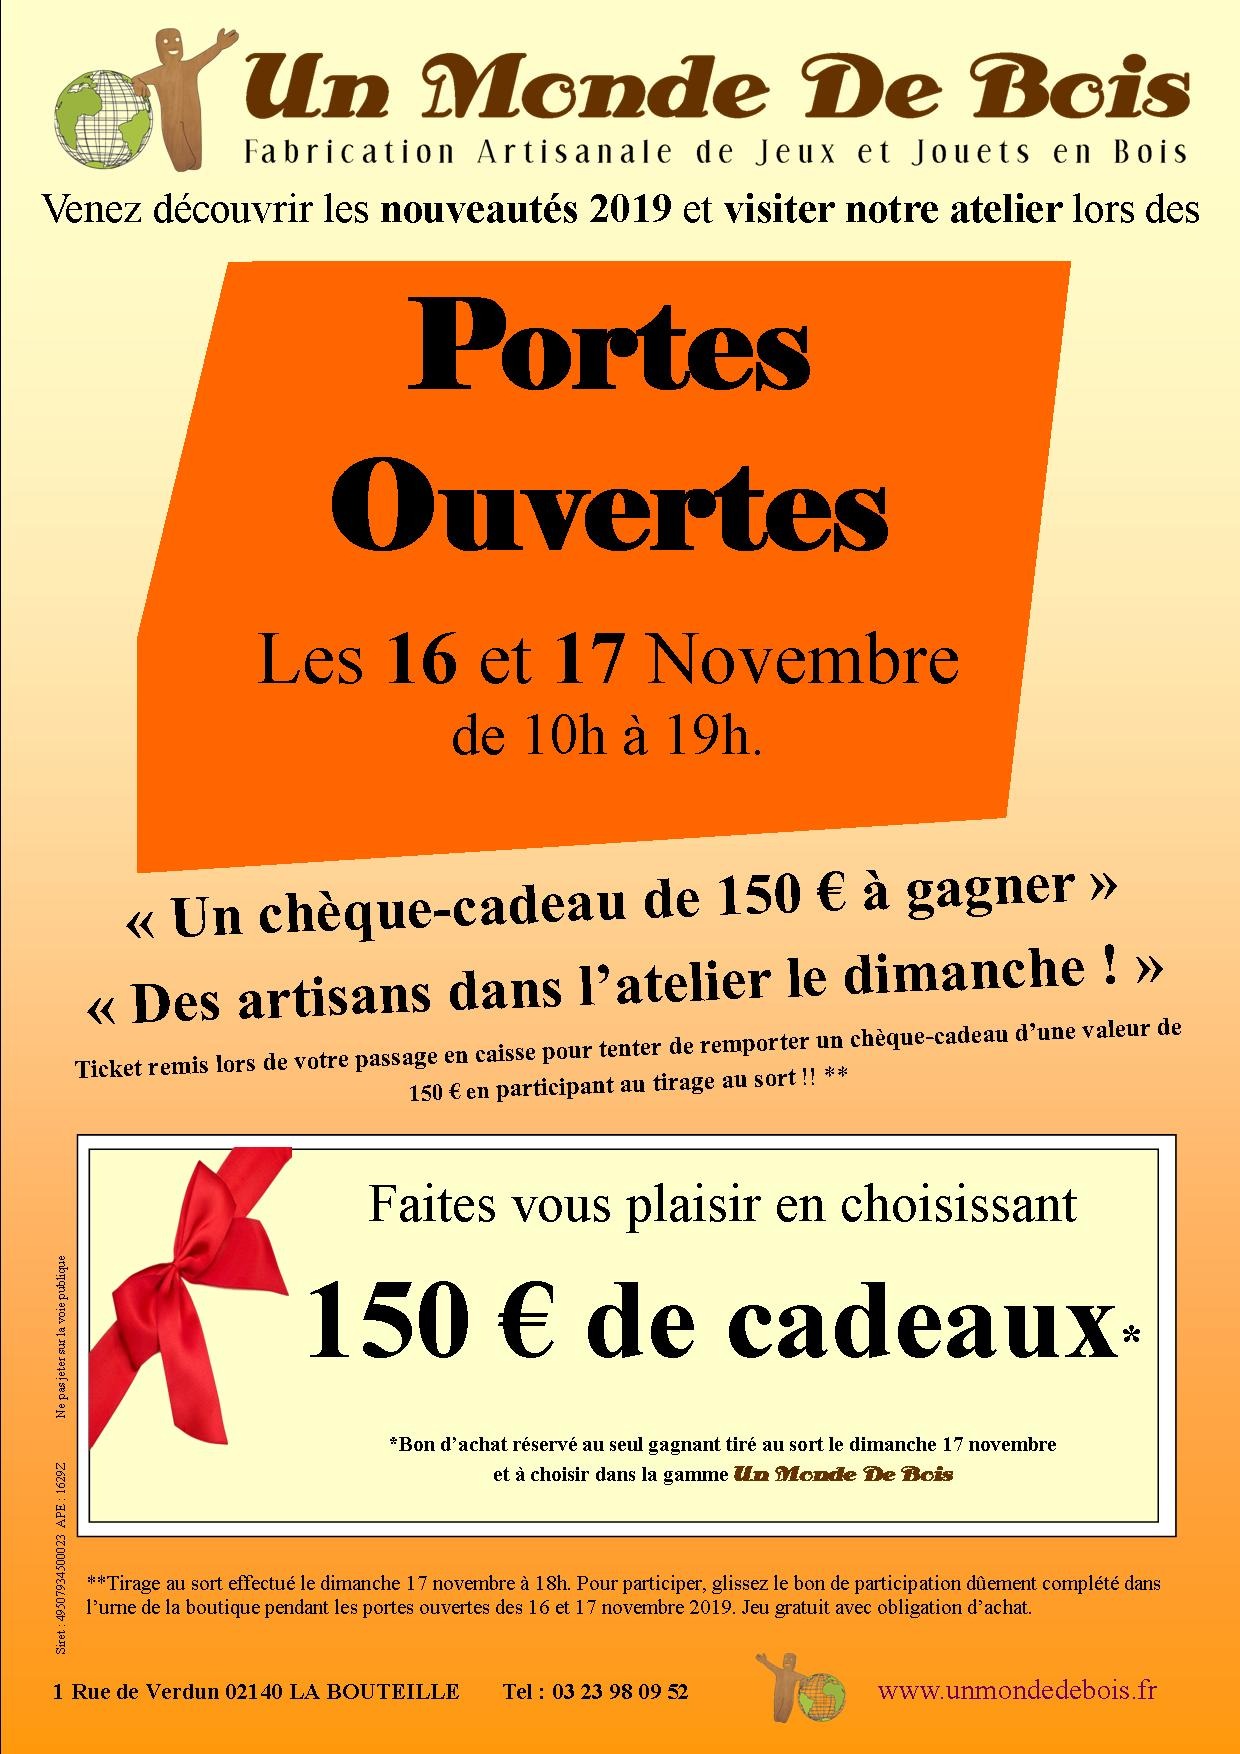 Portes Ouvertes Un Monde De Bois les 16 et 17 Novembre 2019 La Bouteille (02)